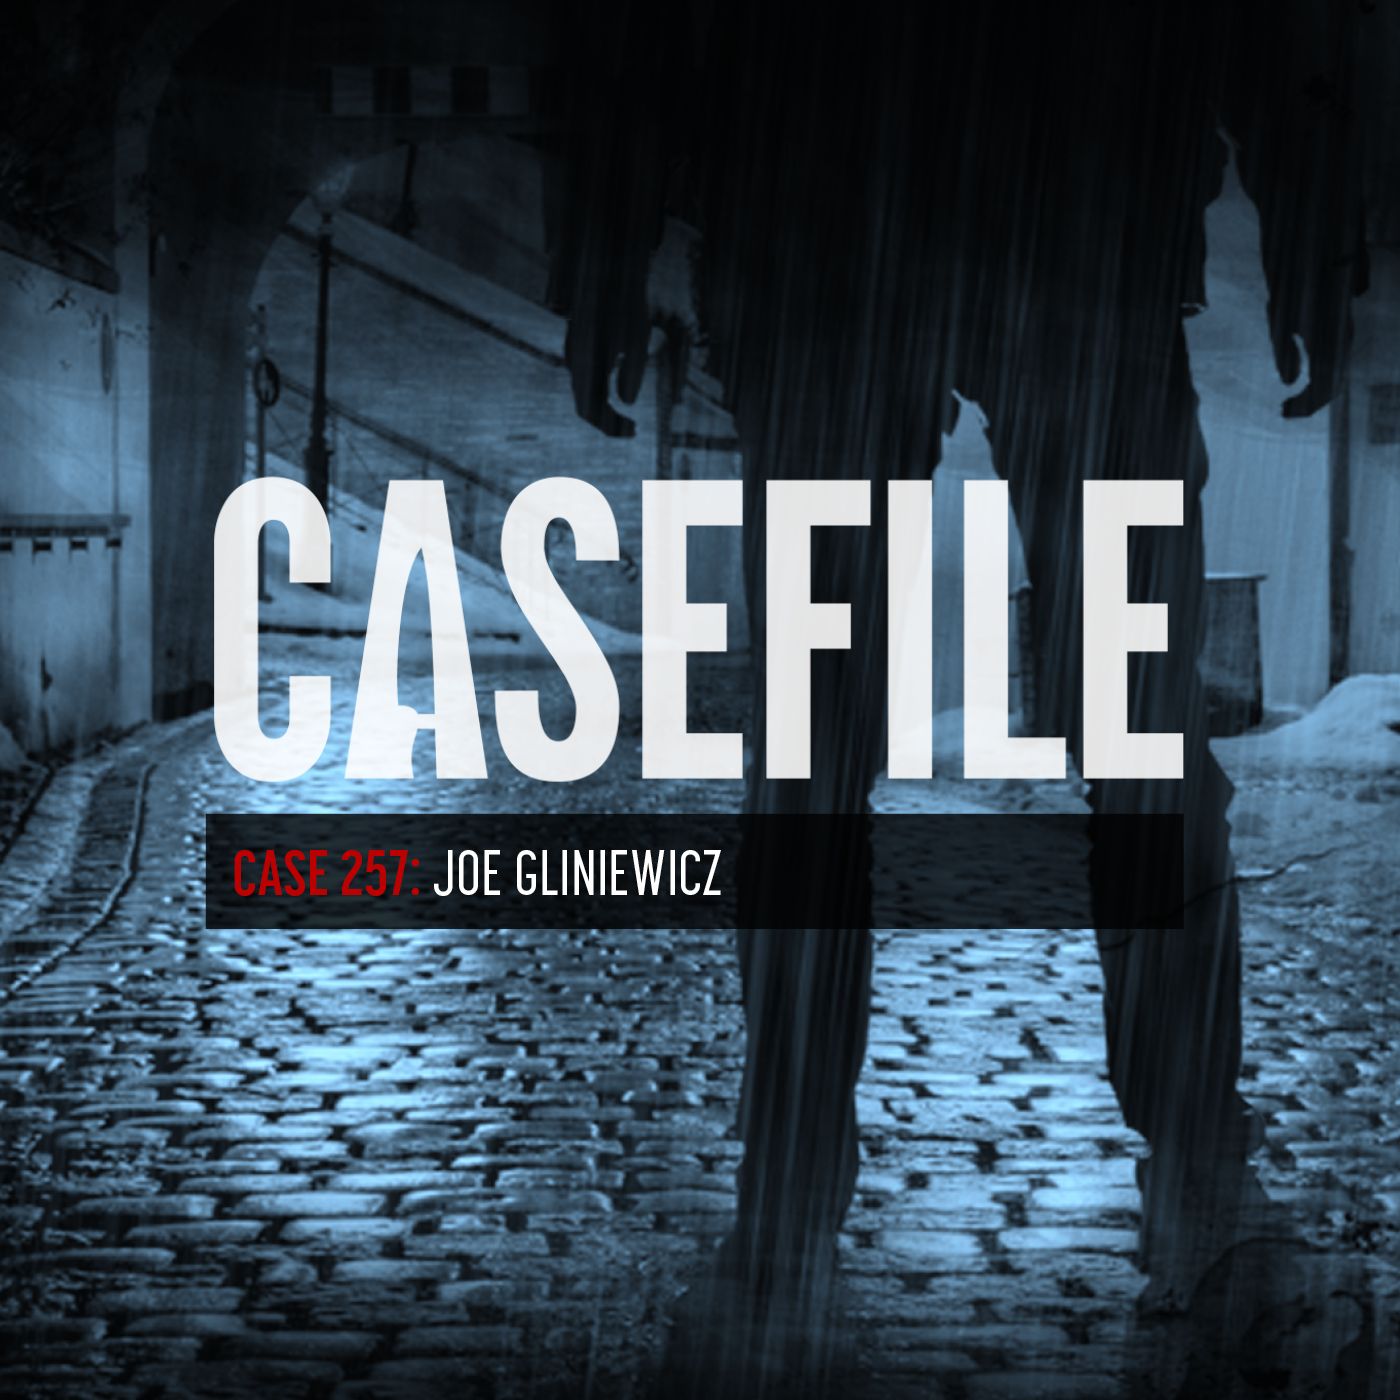 301: Case 257: Joe Gliniewicz